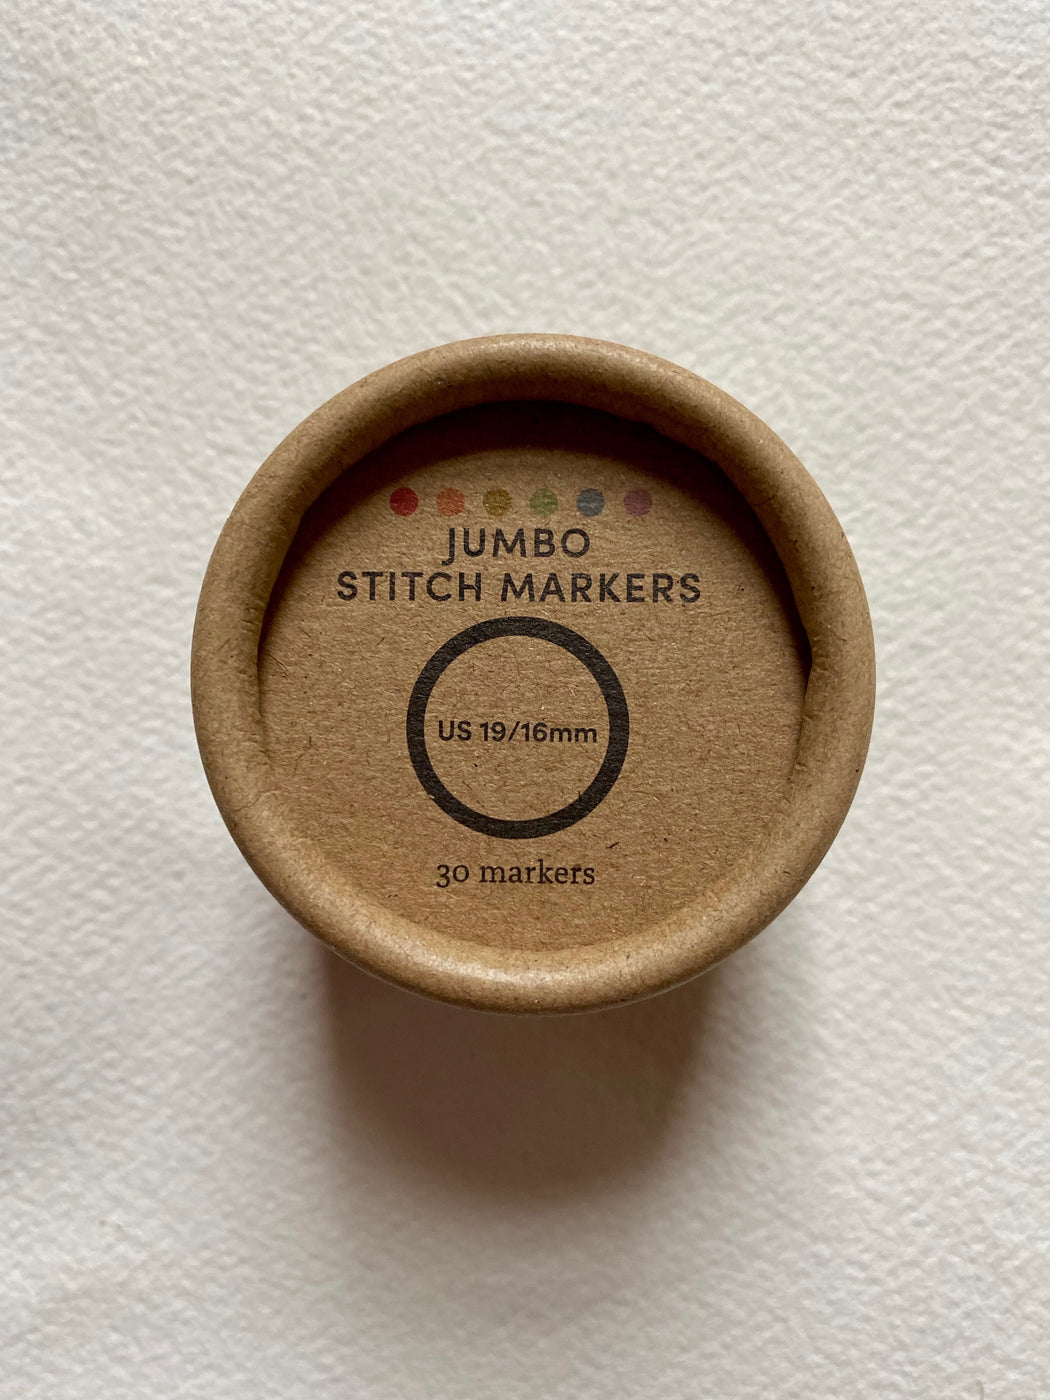 Cocoknits Jumbo Stitch Markers